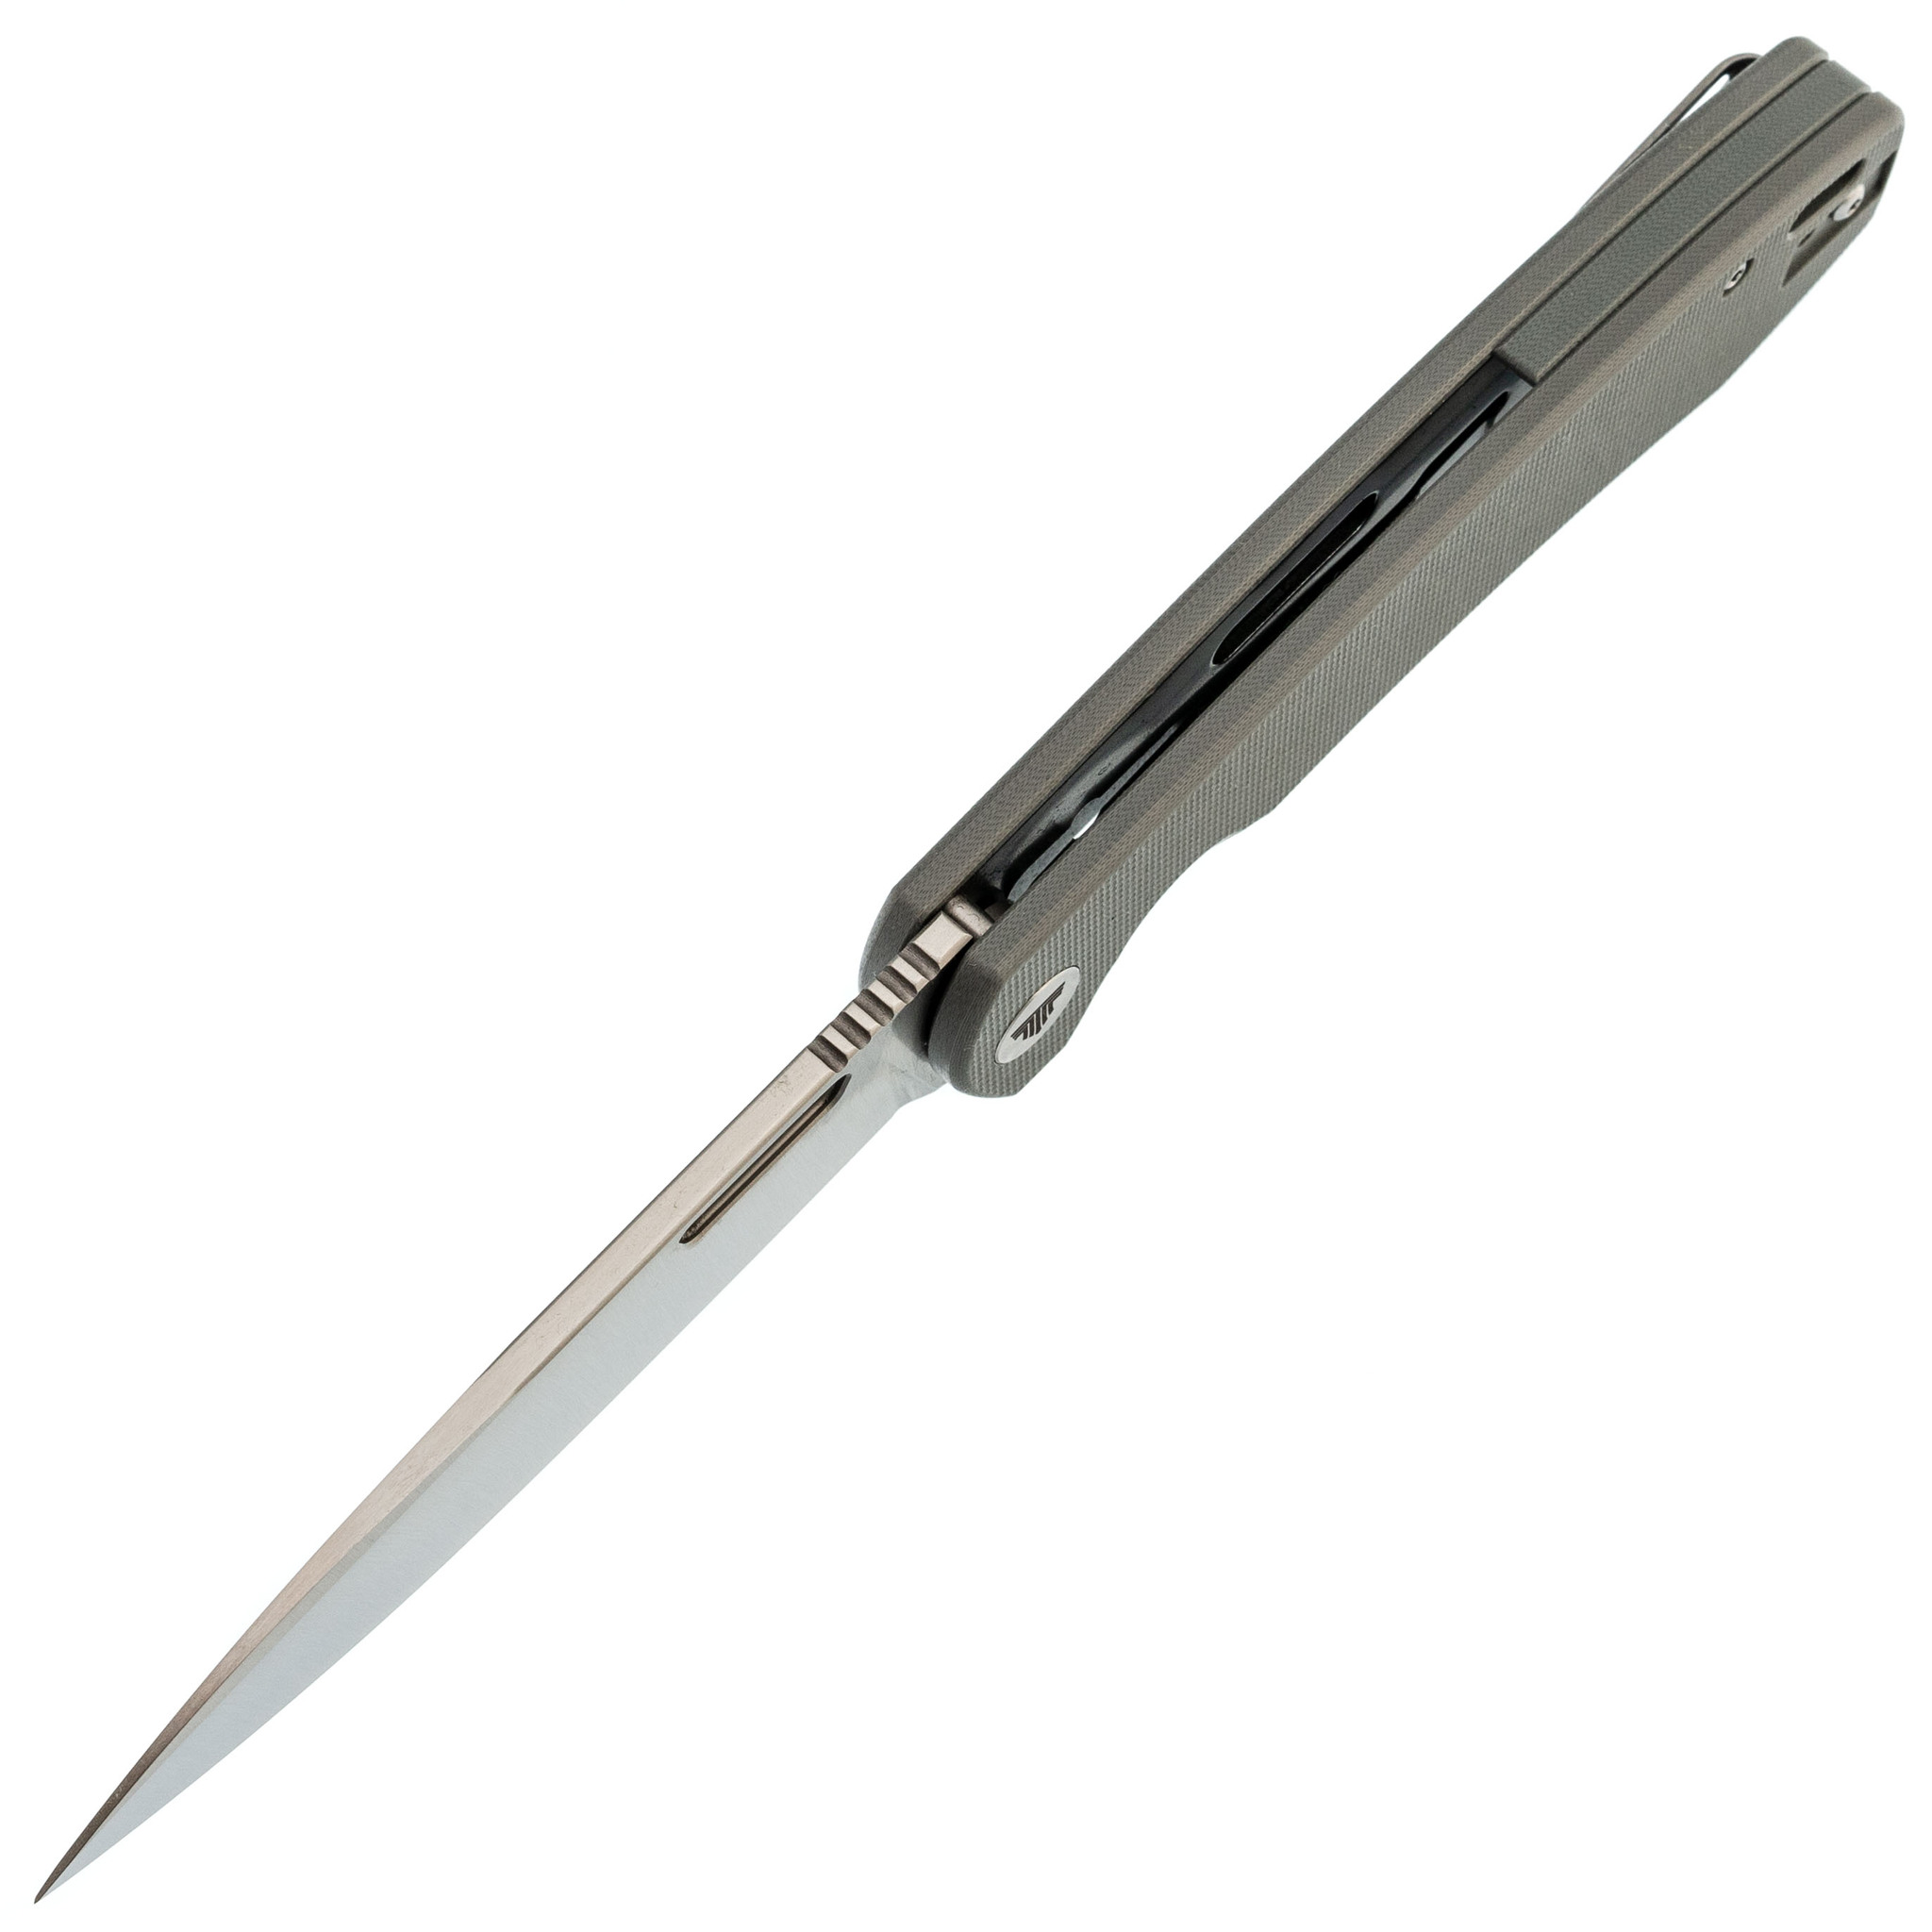 Складной нож Trivisa Columba-03gr, сталь 14C28N, рукоять G10, серый - фото 2